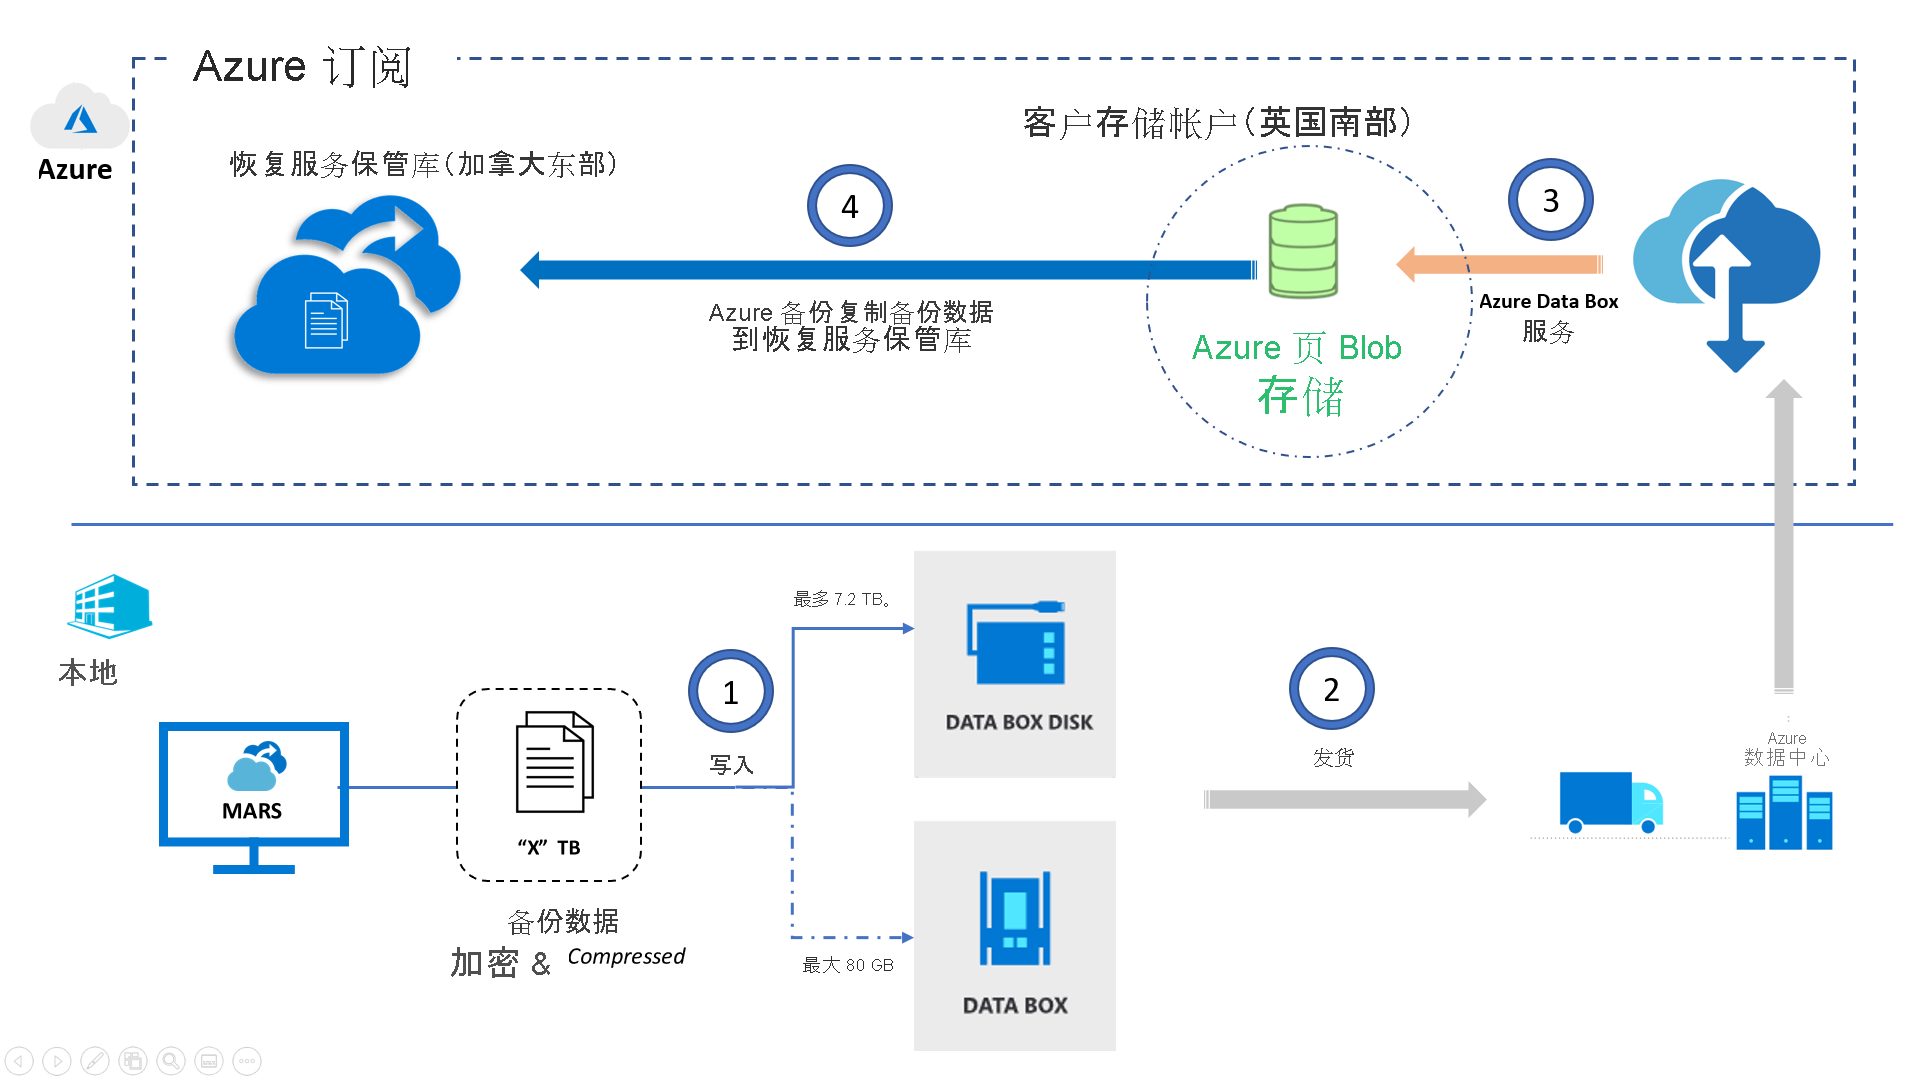 Azure 备份 Data Box 体系结构